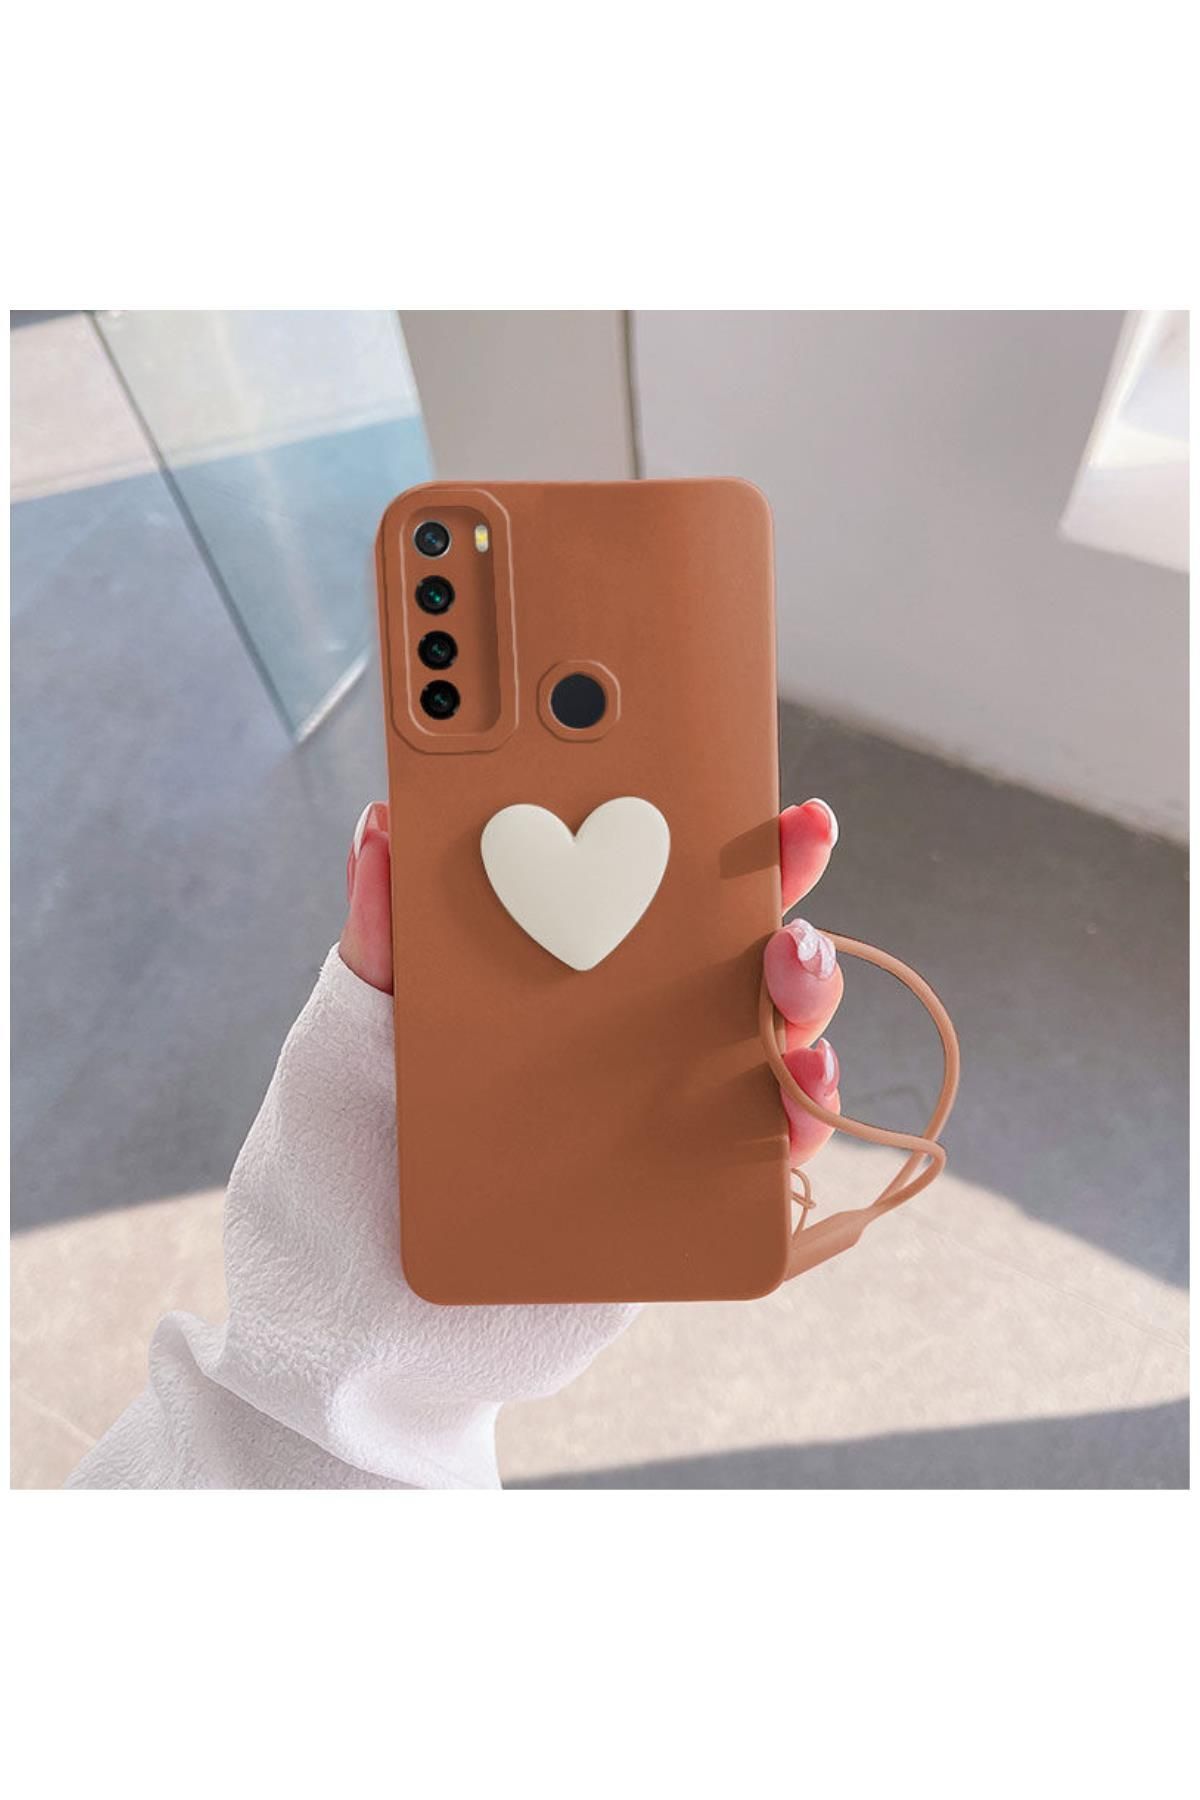 Zebana Xiaomi Redmi Note 8 Uyumlu Kılıf Kalpli Love Silikon Kılıf Kahverengi